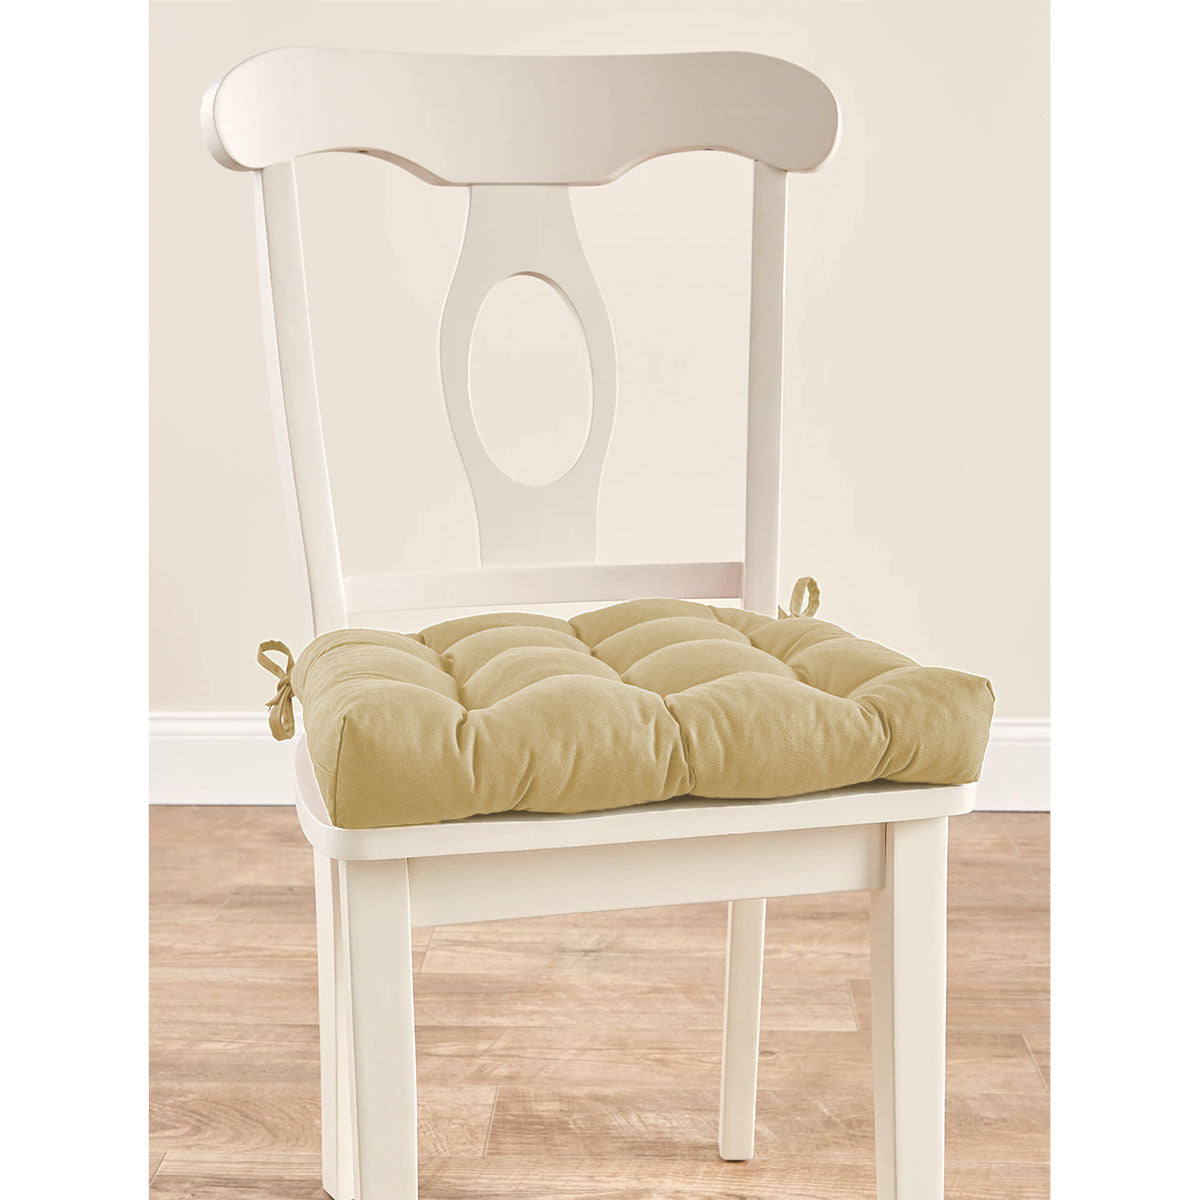 Never-Flatten Chair Pad - Duck Cloth